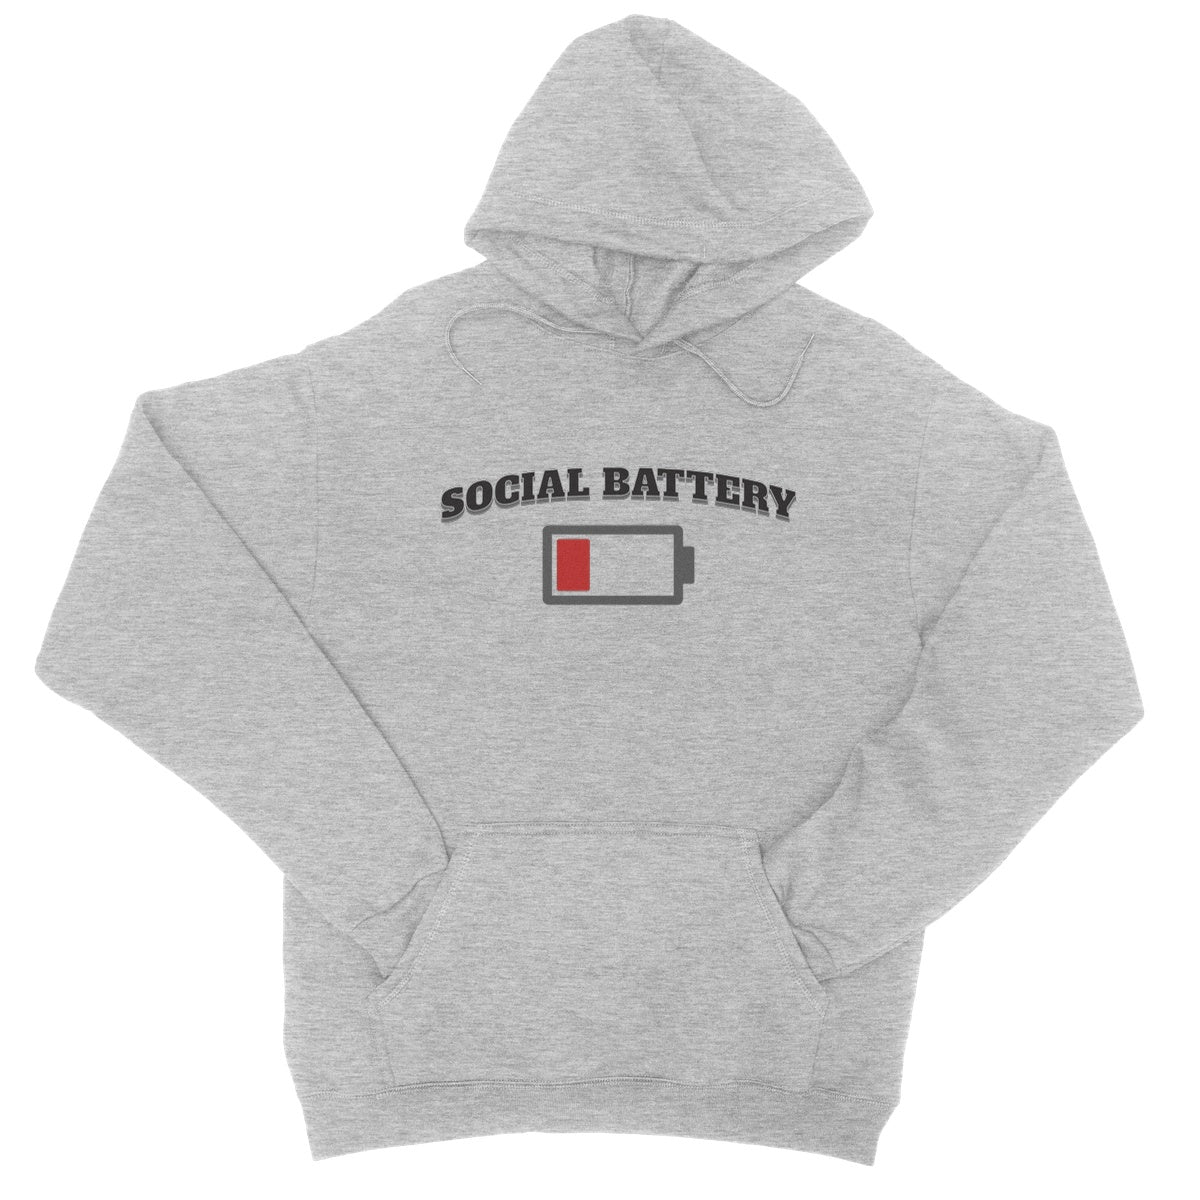 low social battery hoodie grey